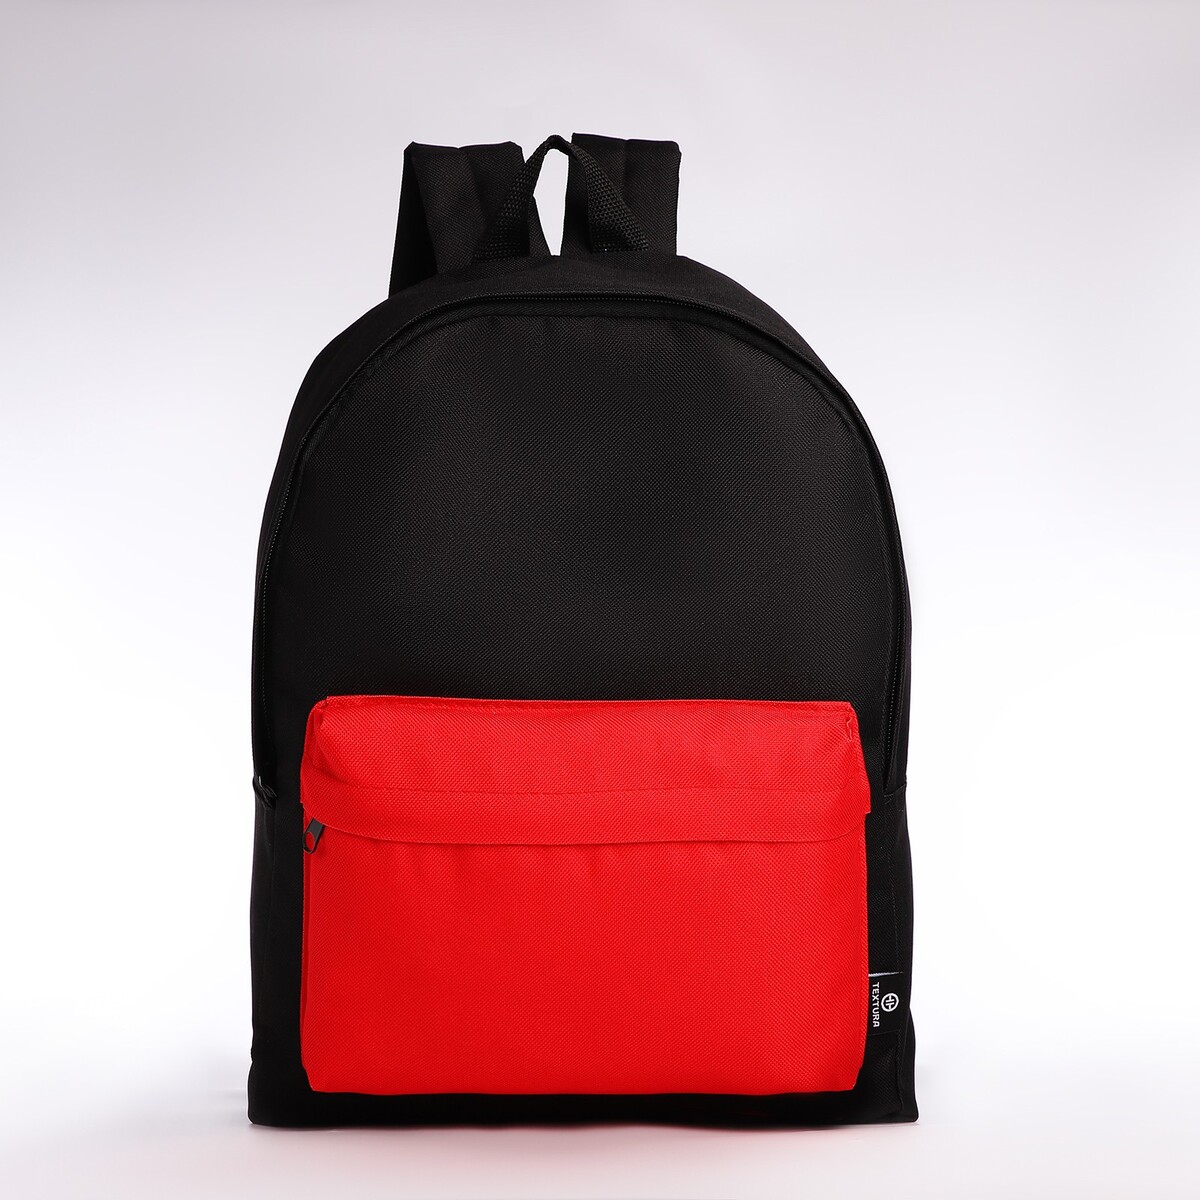 Спортивный рюкзак textura, 20 литров, цвет черный/красный рюкзак rockbros 20 литров rb h9 bk